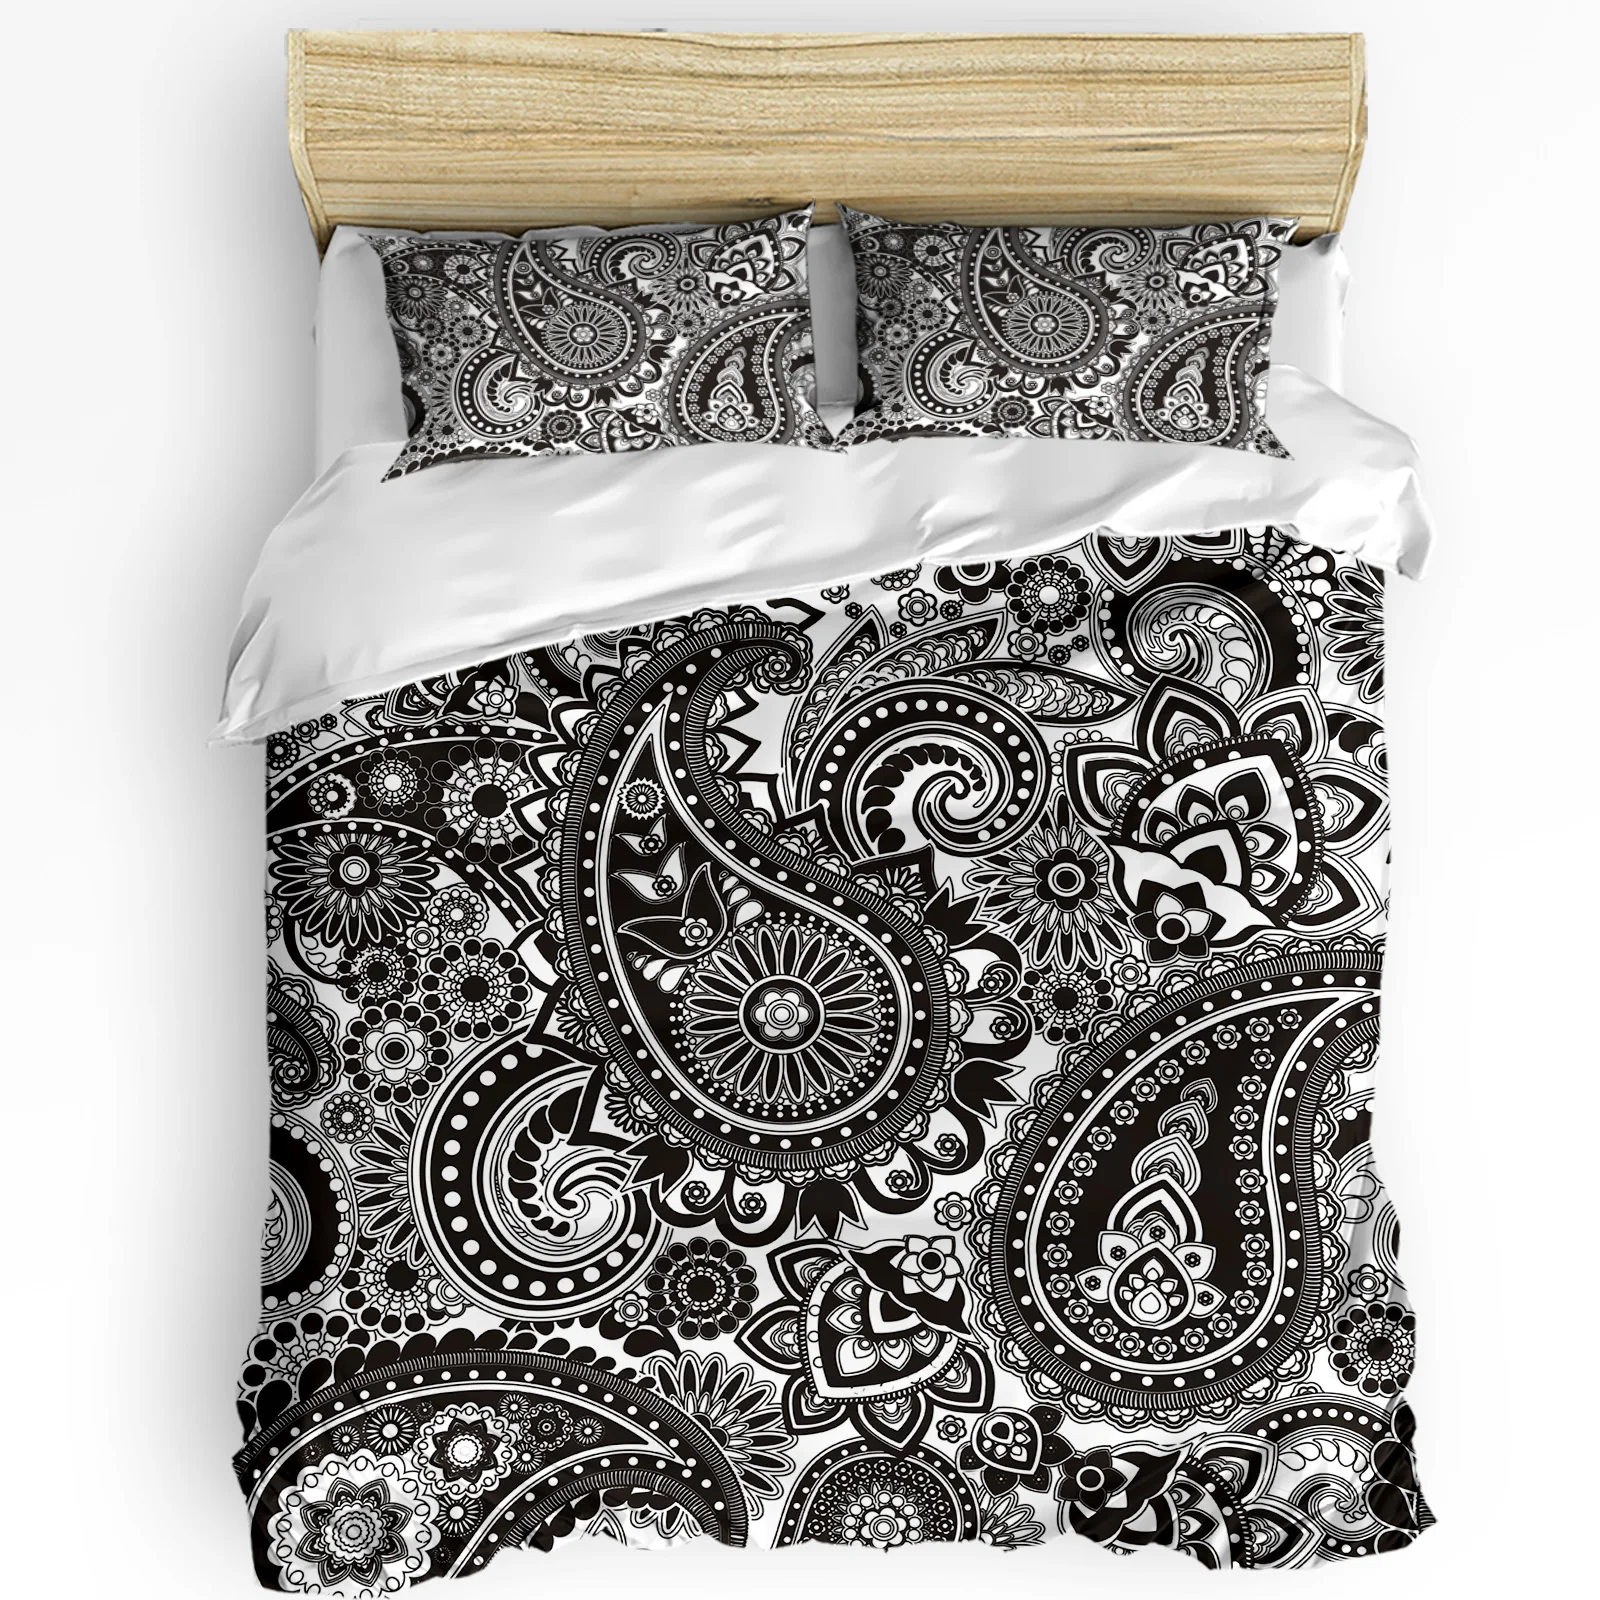 

Черно-белый комплект постельного белья с цветочным рисунком Пейсли, пододеяльник, постельное белье, домашнее кресло, наволочки, спальный комплект постельного белья, без простыни